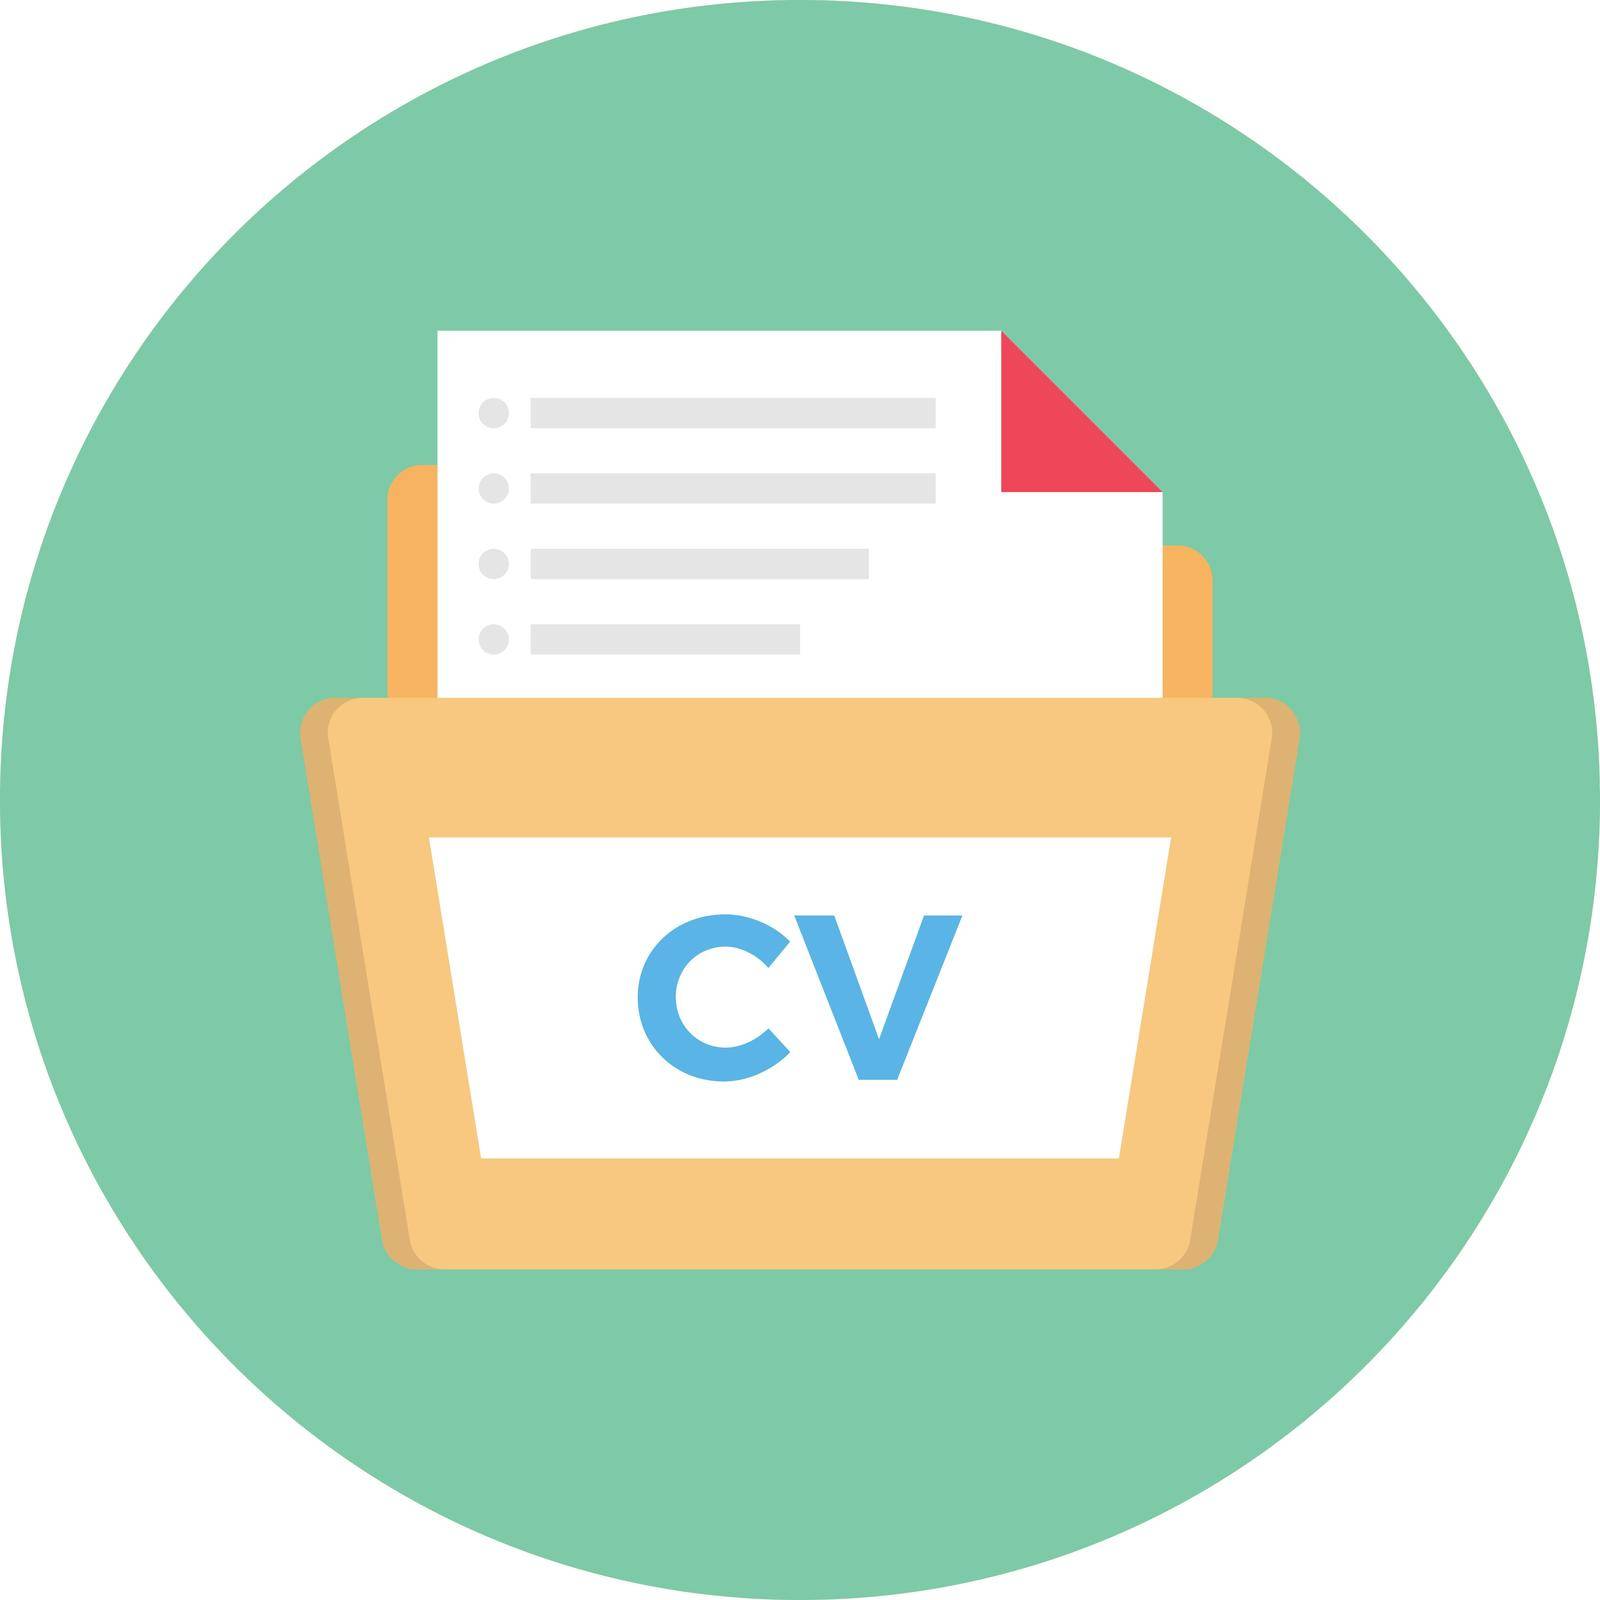 CV folder vector flat colour icon